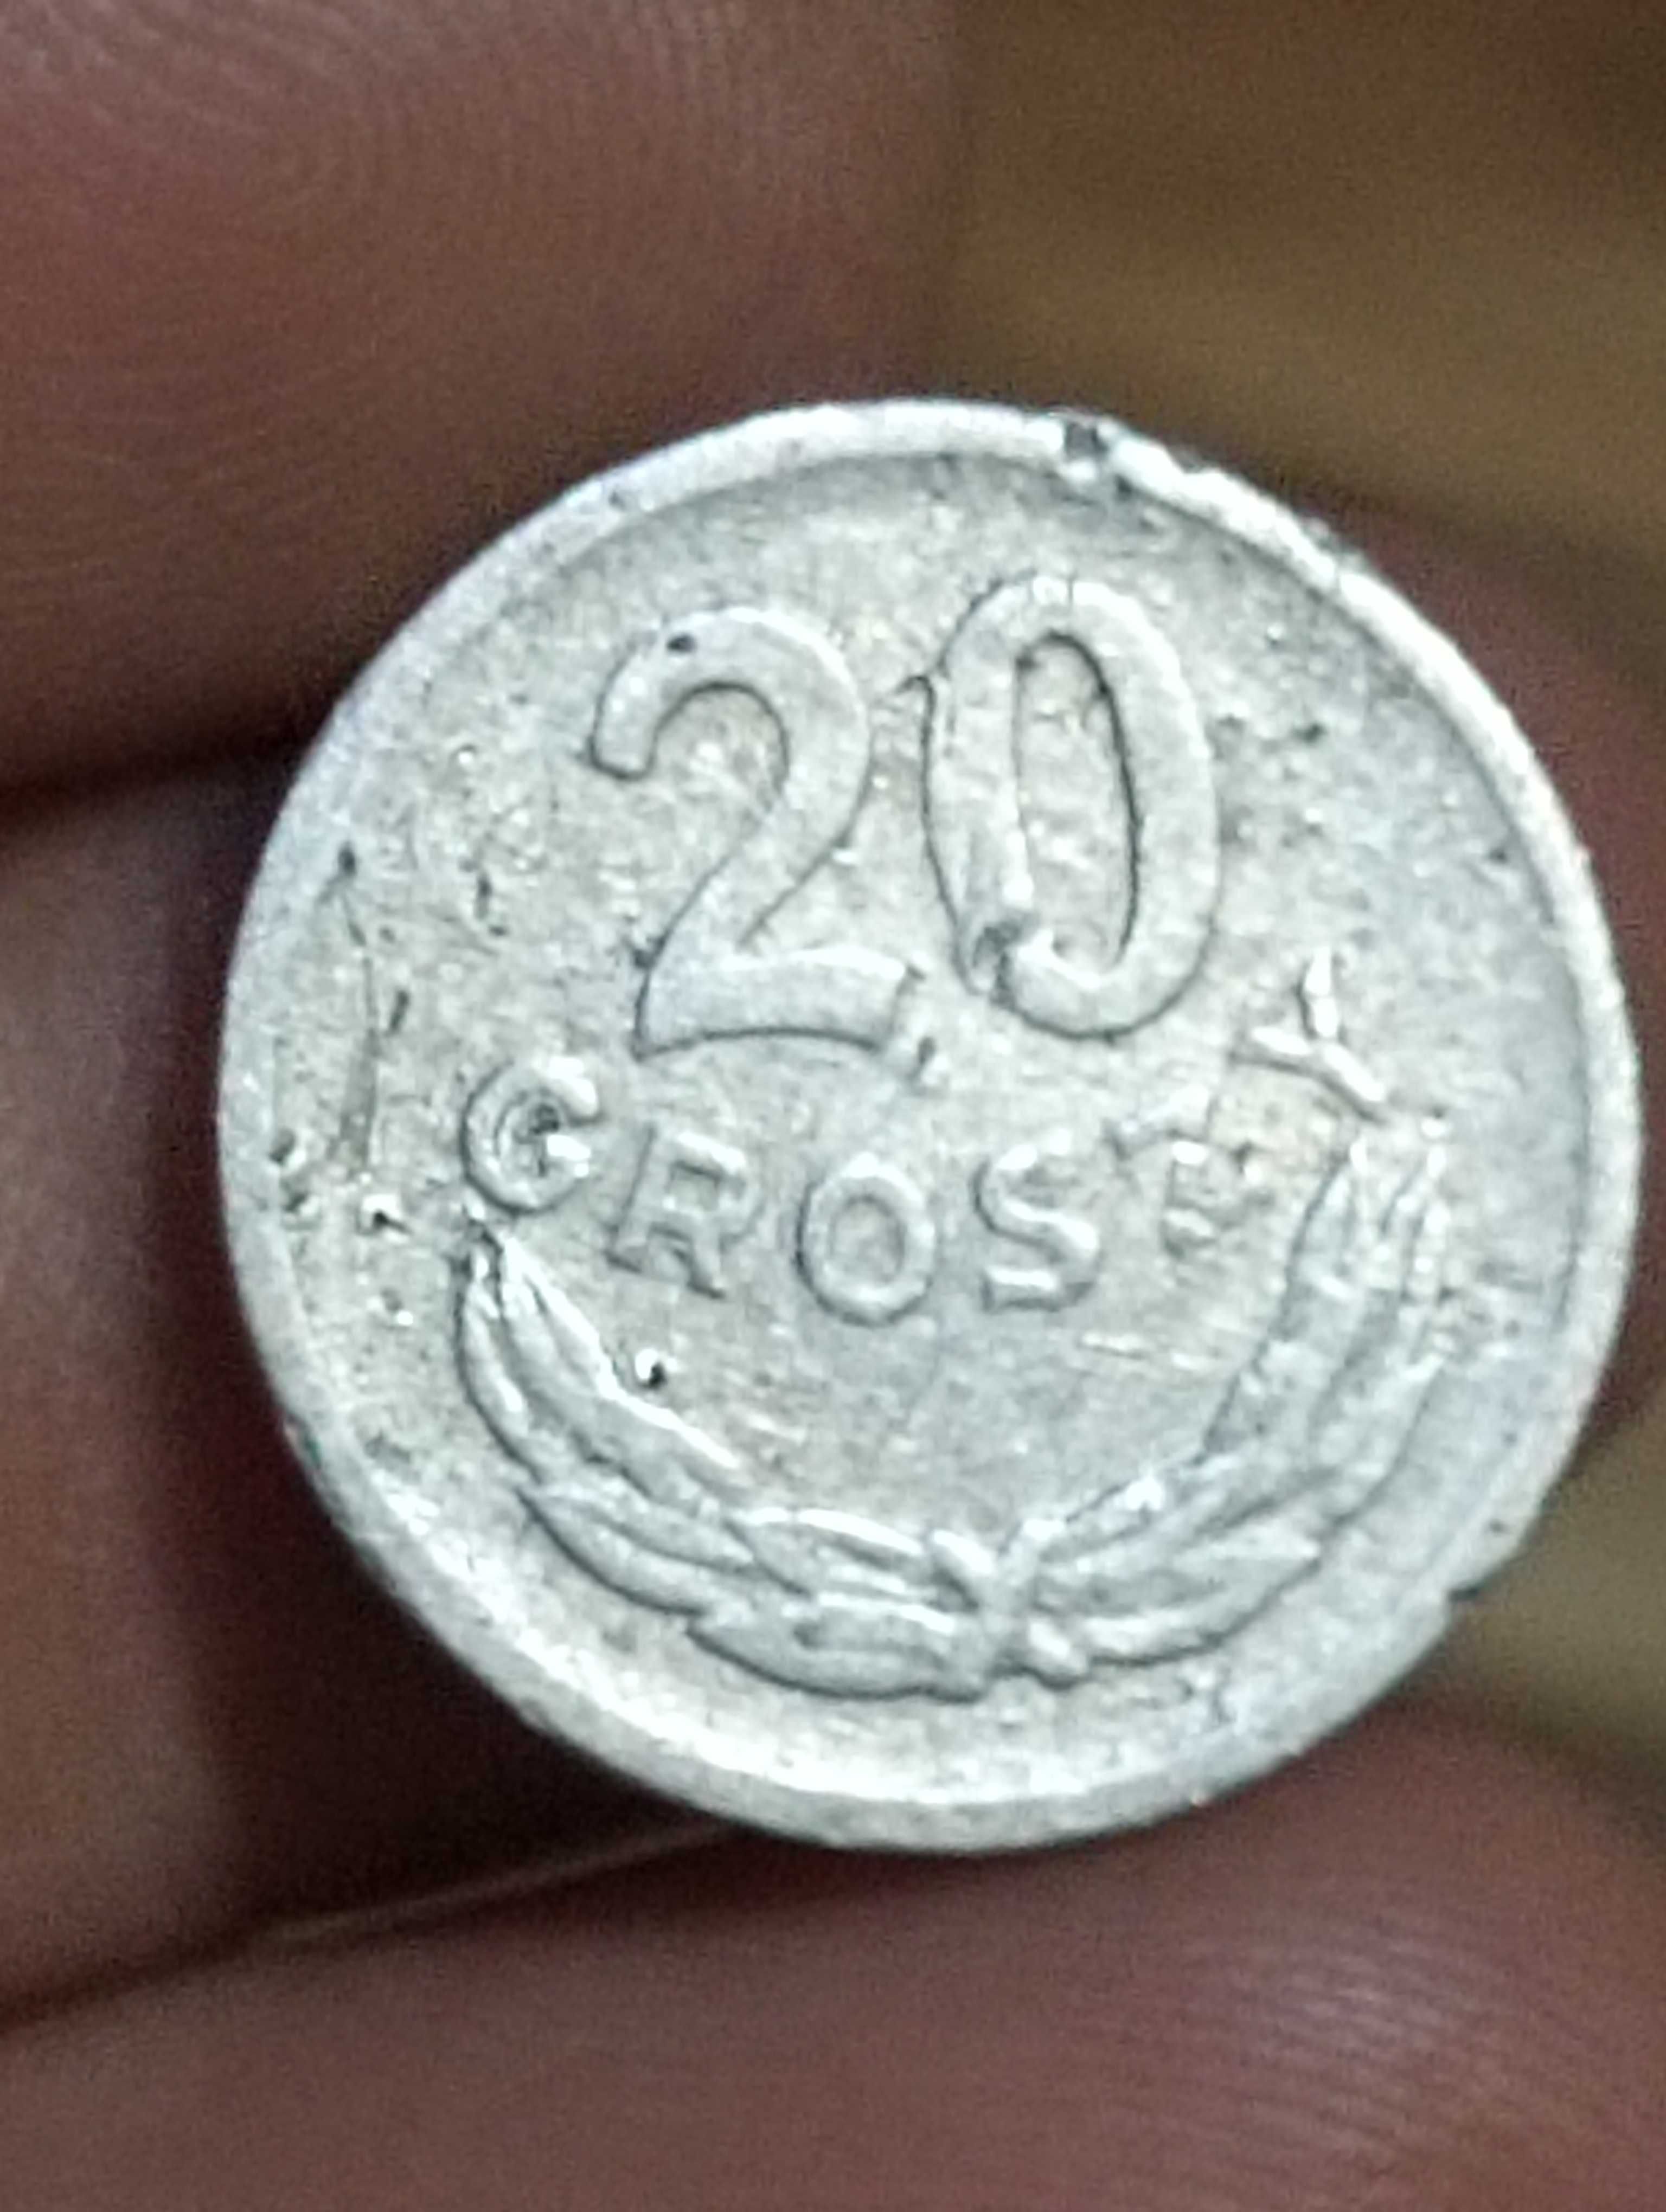 Sprzedam monetę 20 groszy 1969 rok